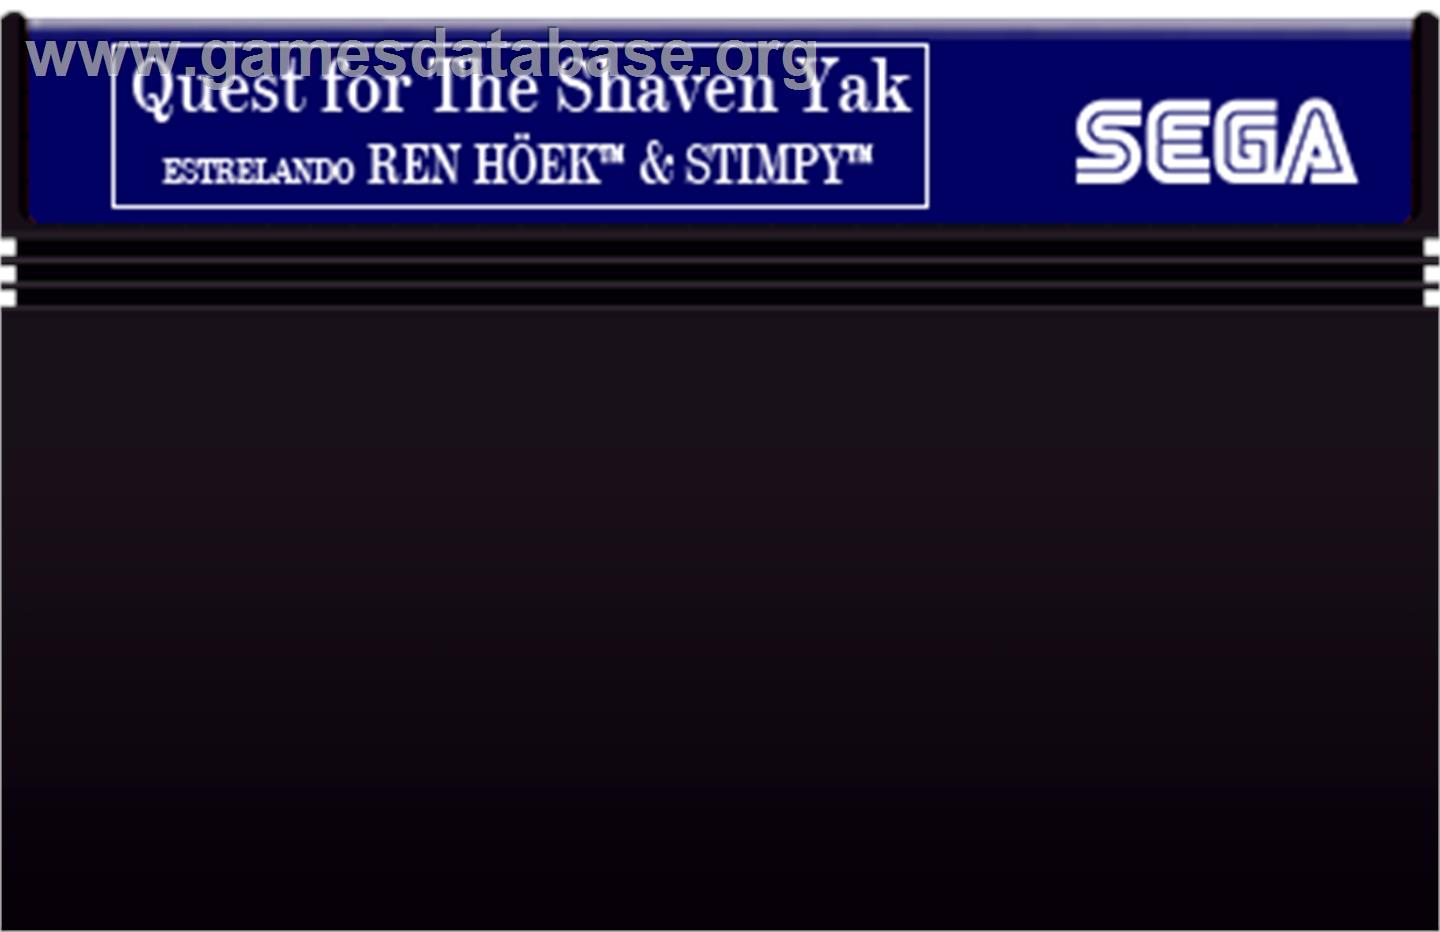 Quest for the Shaven Yak starring Ren Hoëk & Stimpy - Sega Master System - Artwork - Cartridge